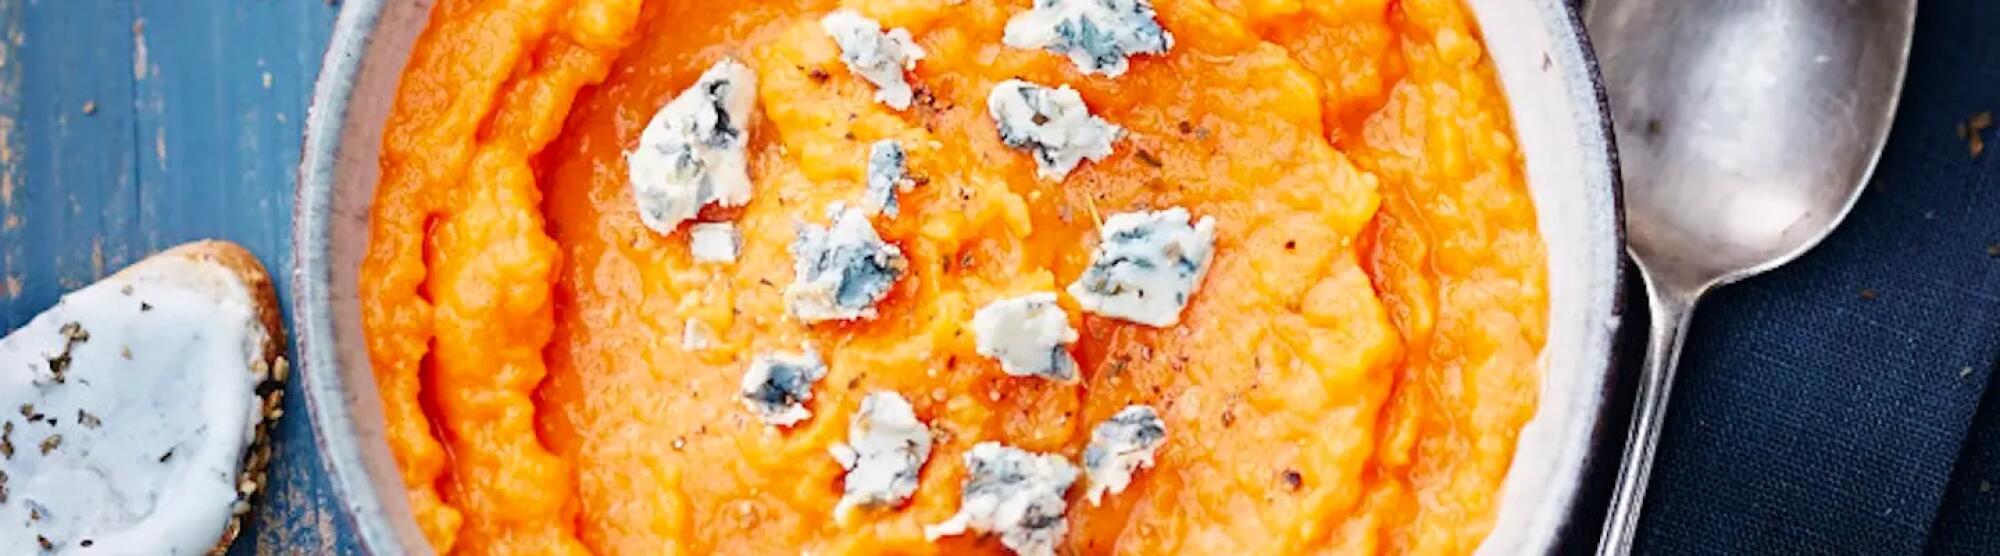 Recette : Purée de carottes au fromage bleu